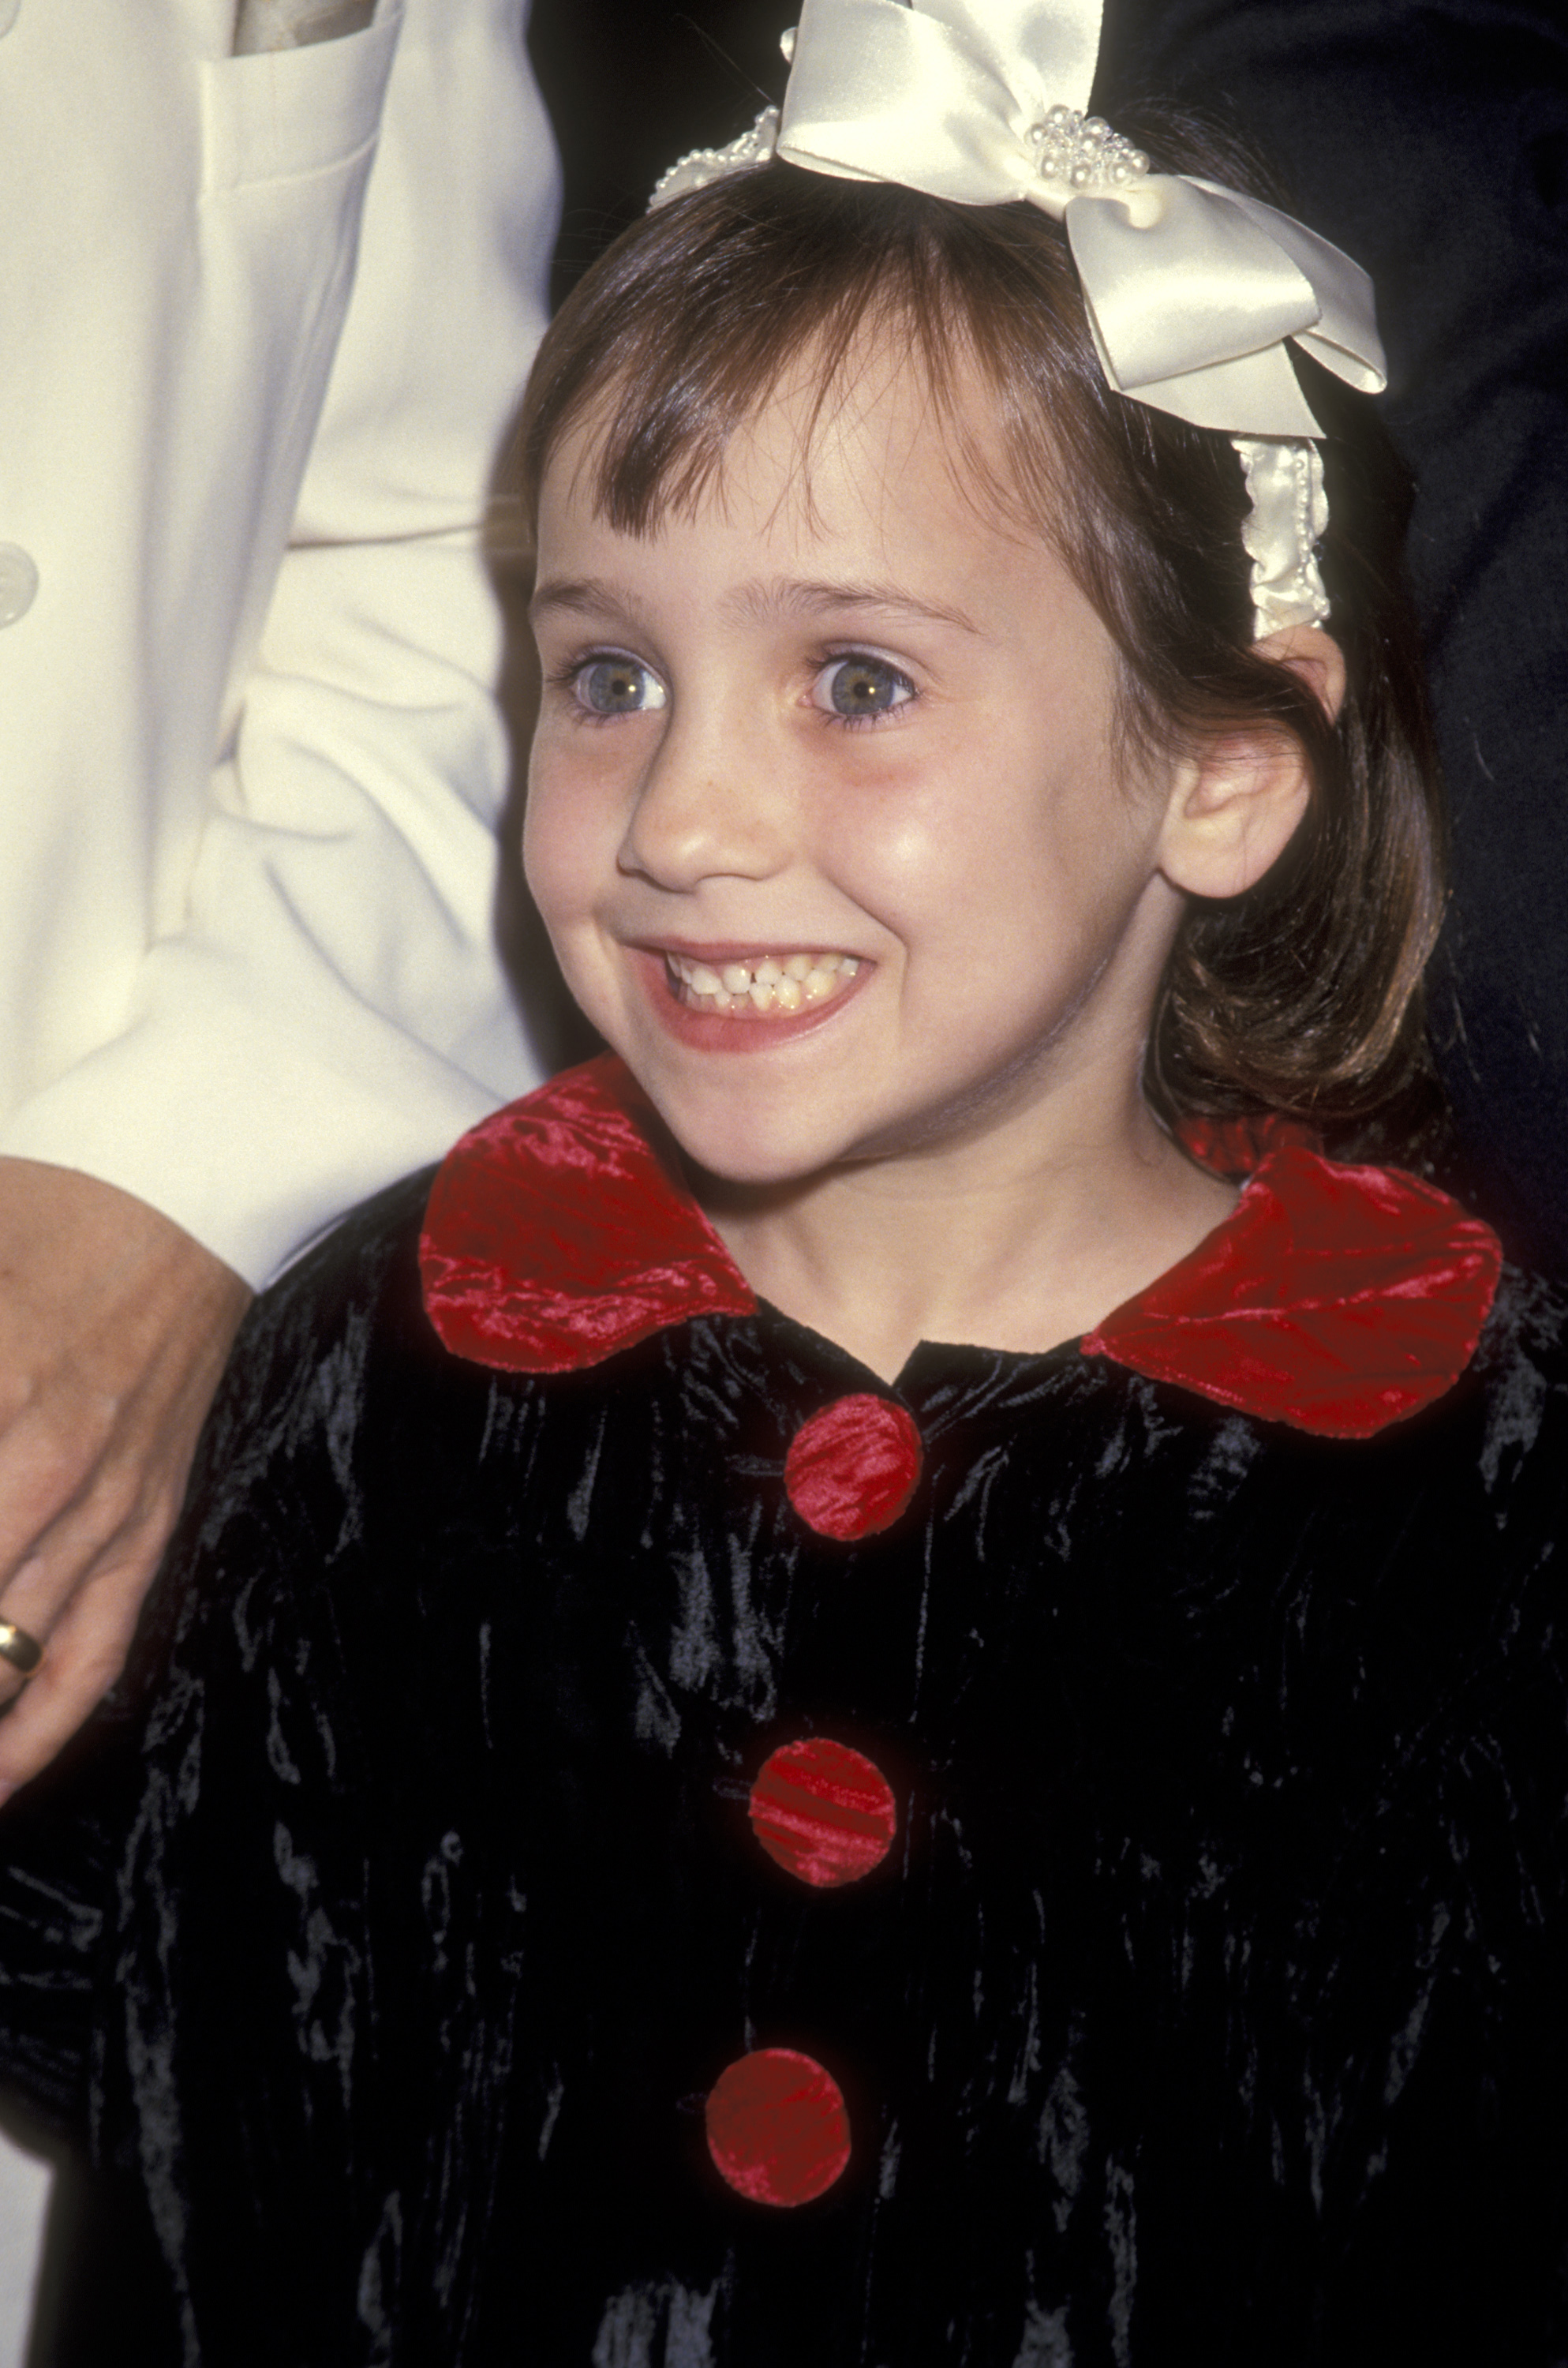 Mara Wilson bei der Premiere von "Mrs. Doubtfire" in Beverly Hills, 1993 | Quelle: Getty Images